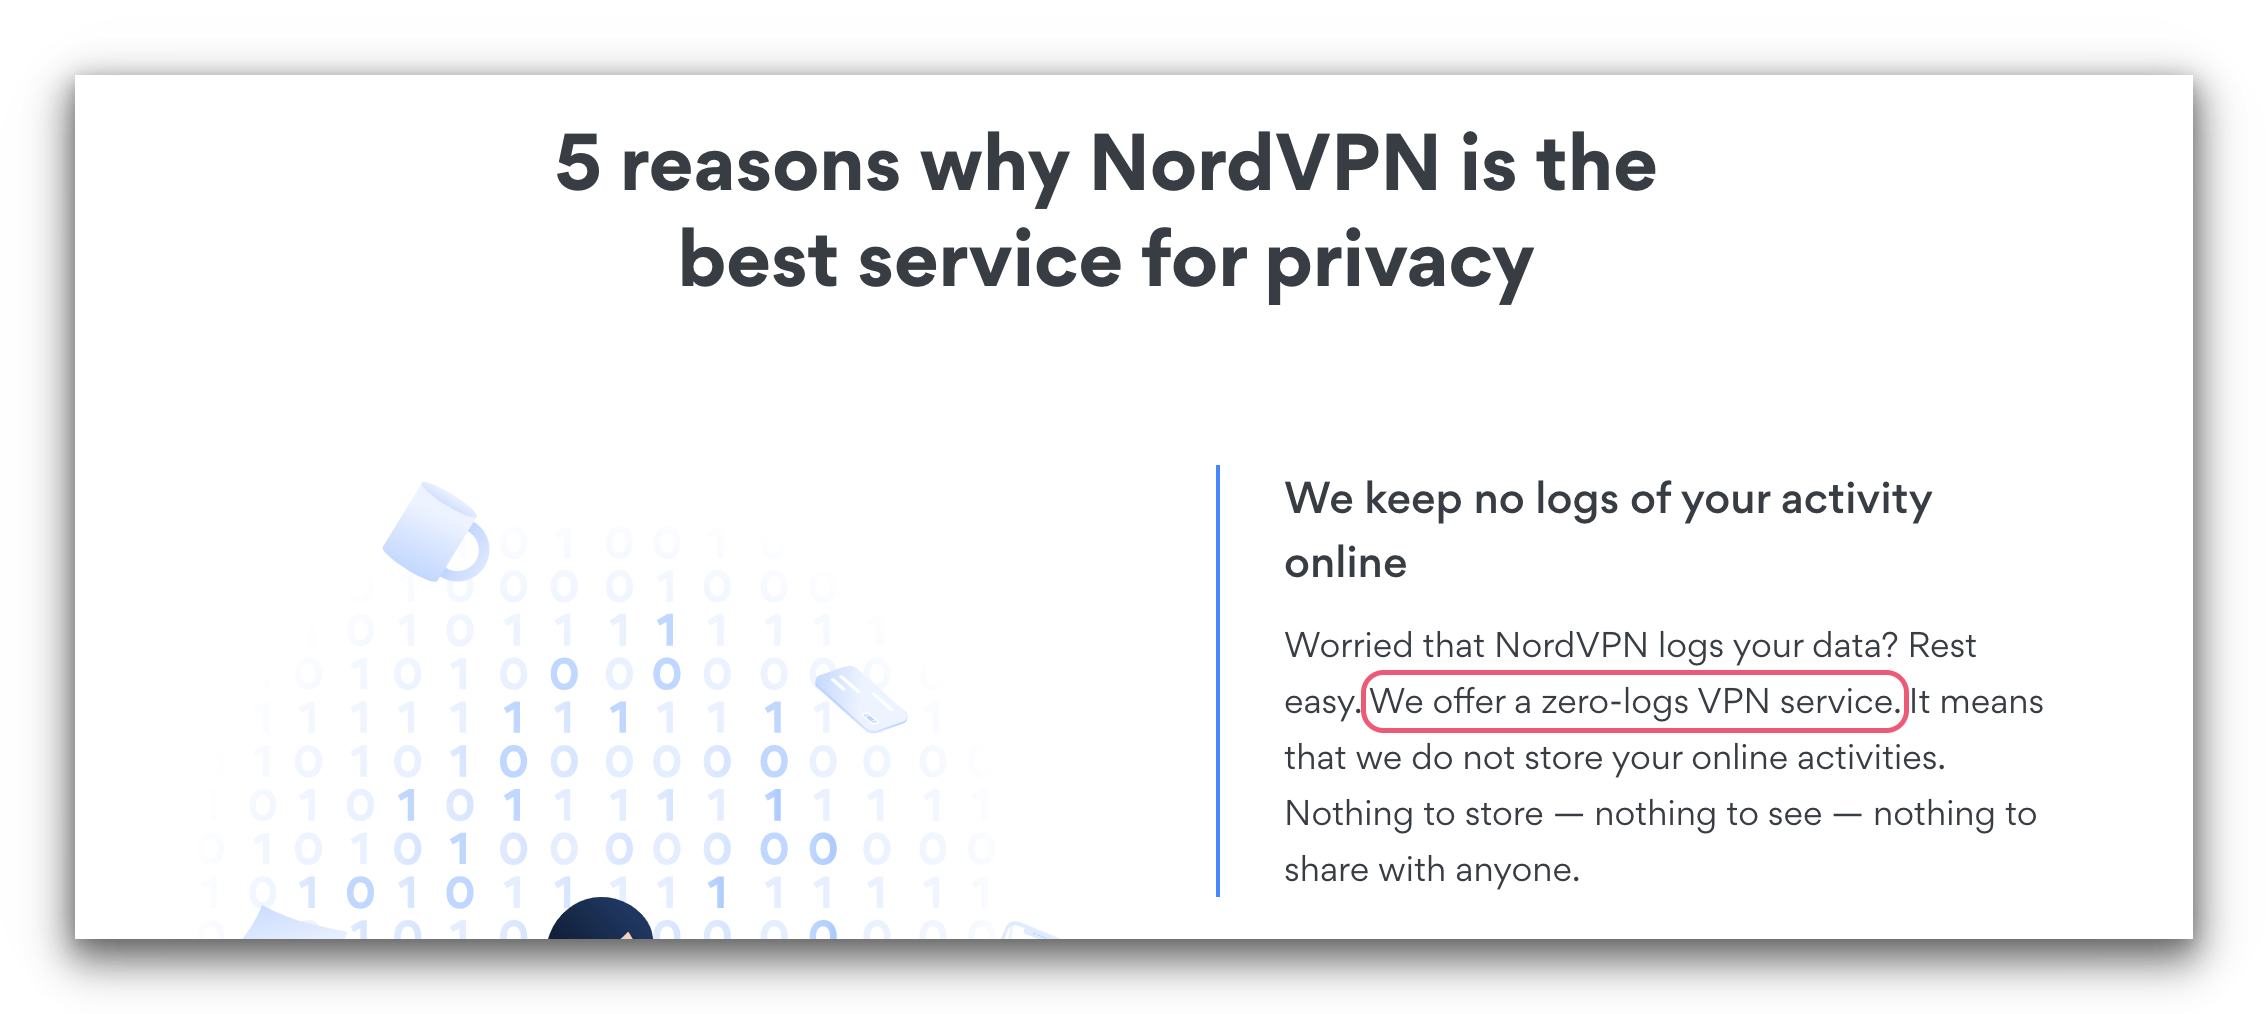 Screenshot from NordVPN's website.